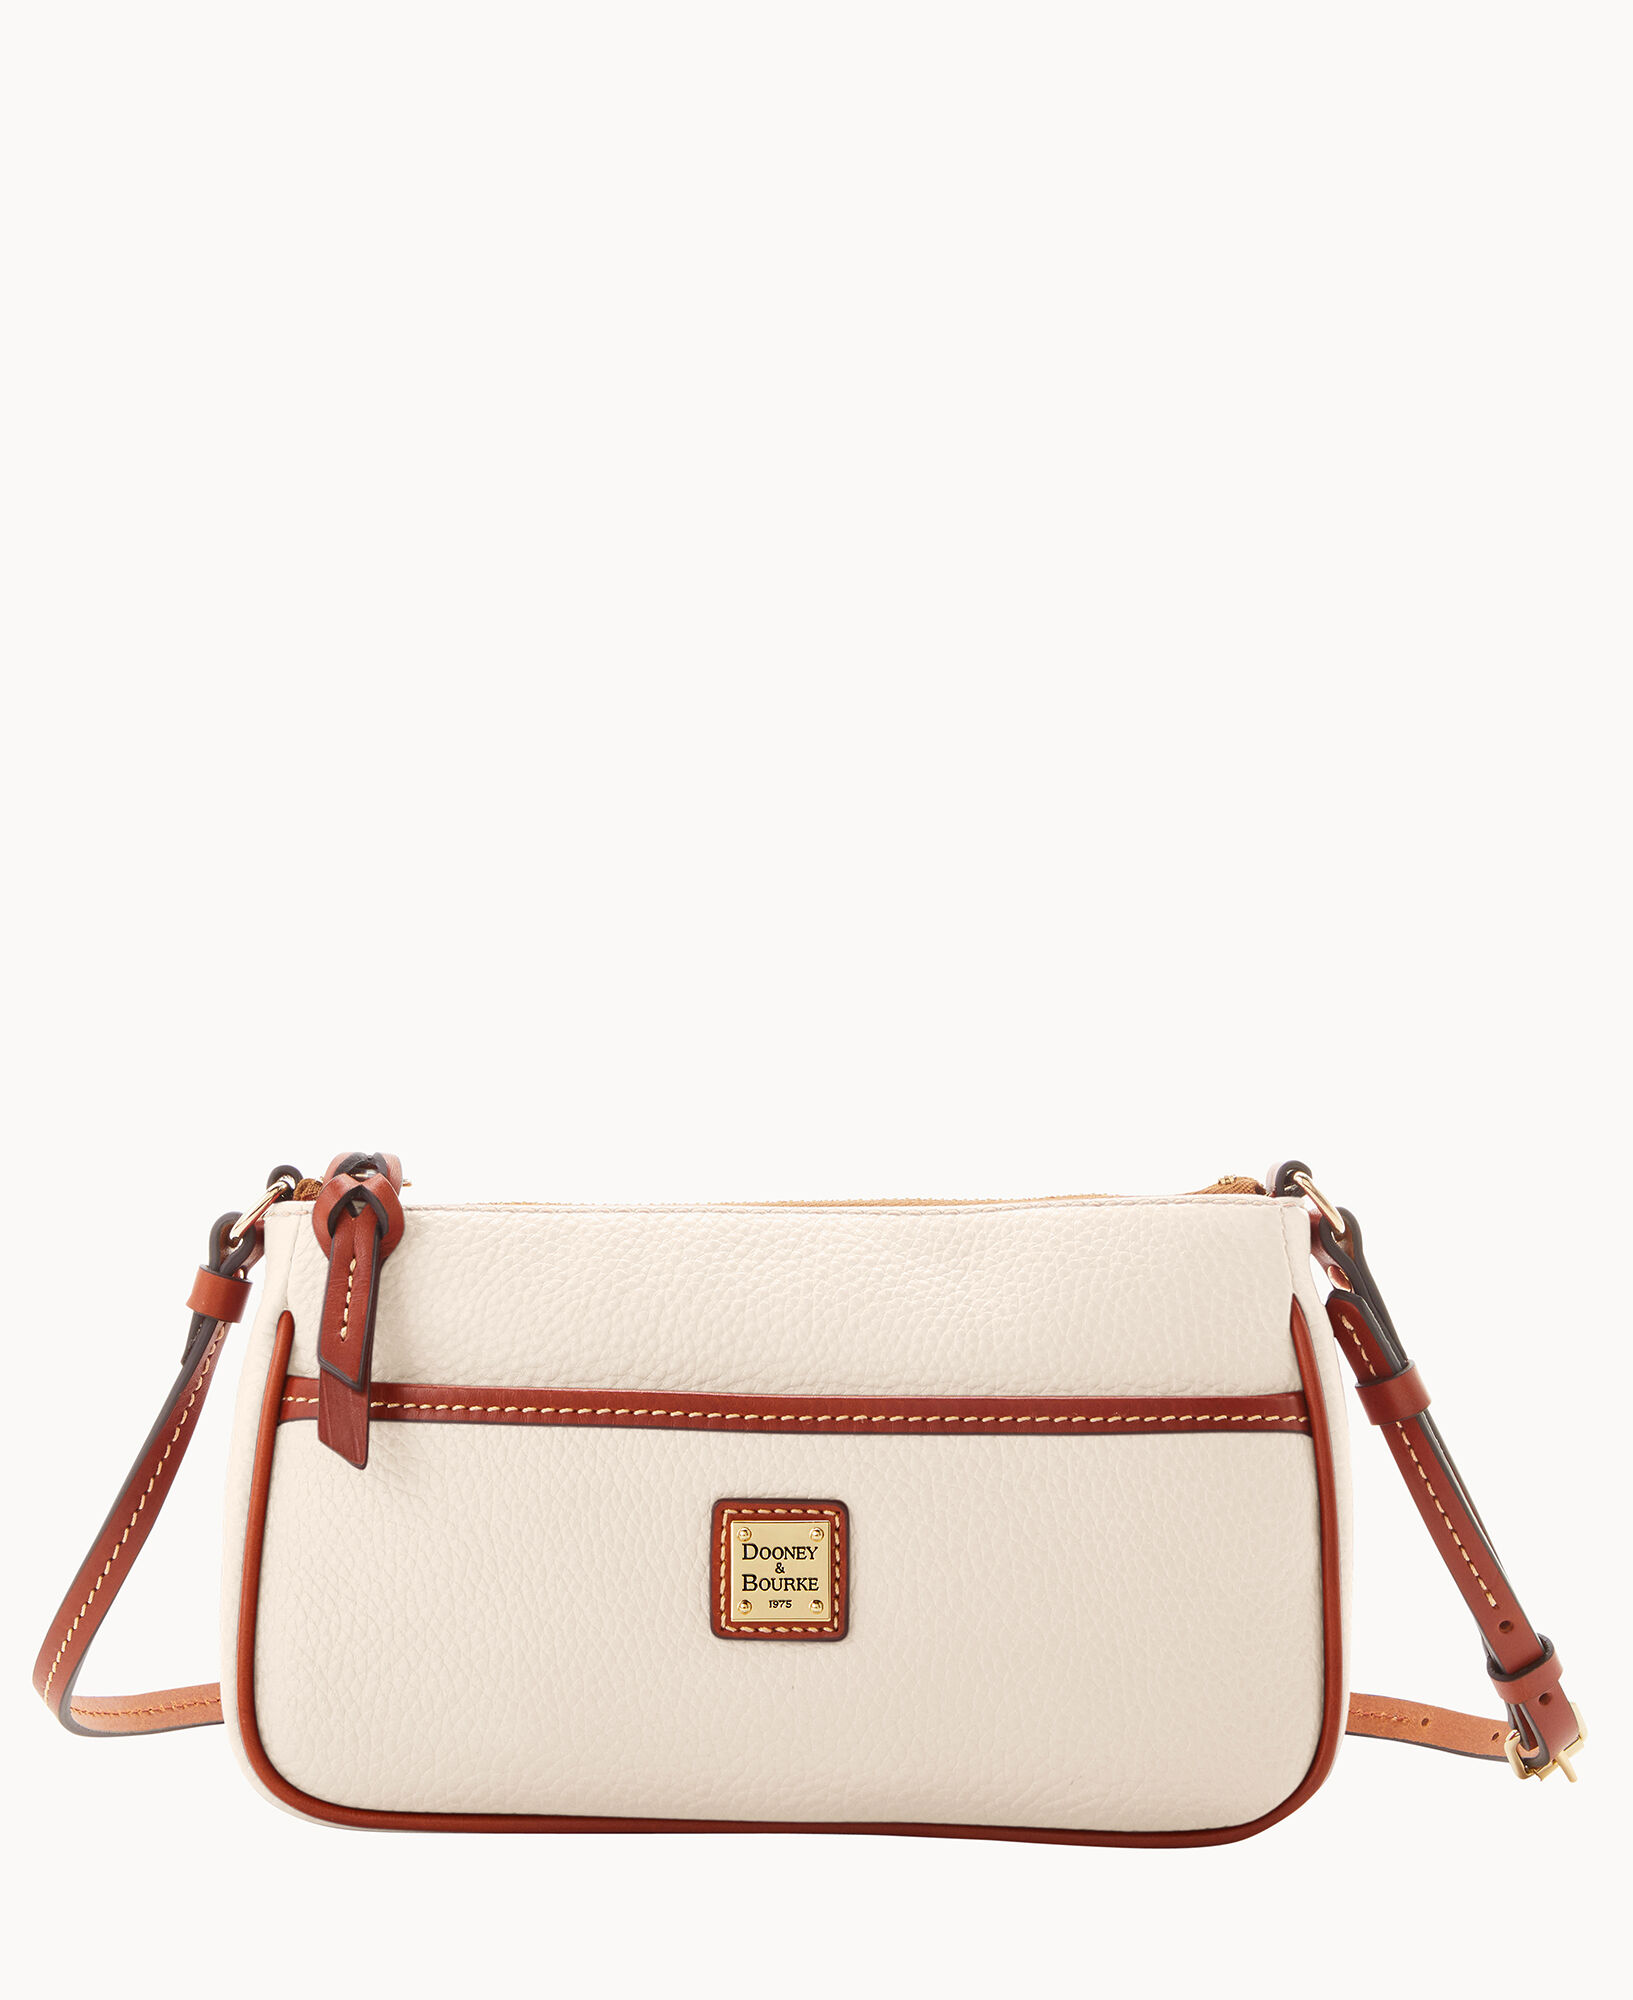 Dooney & Bourke woman’s Lola pouchette crossbody Handbags